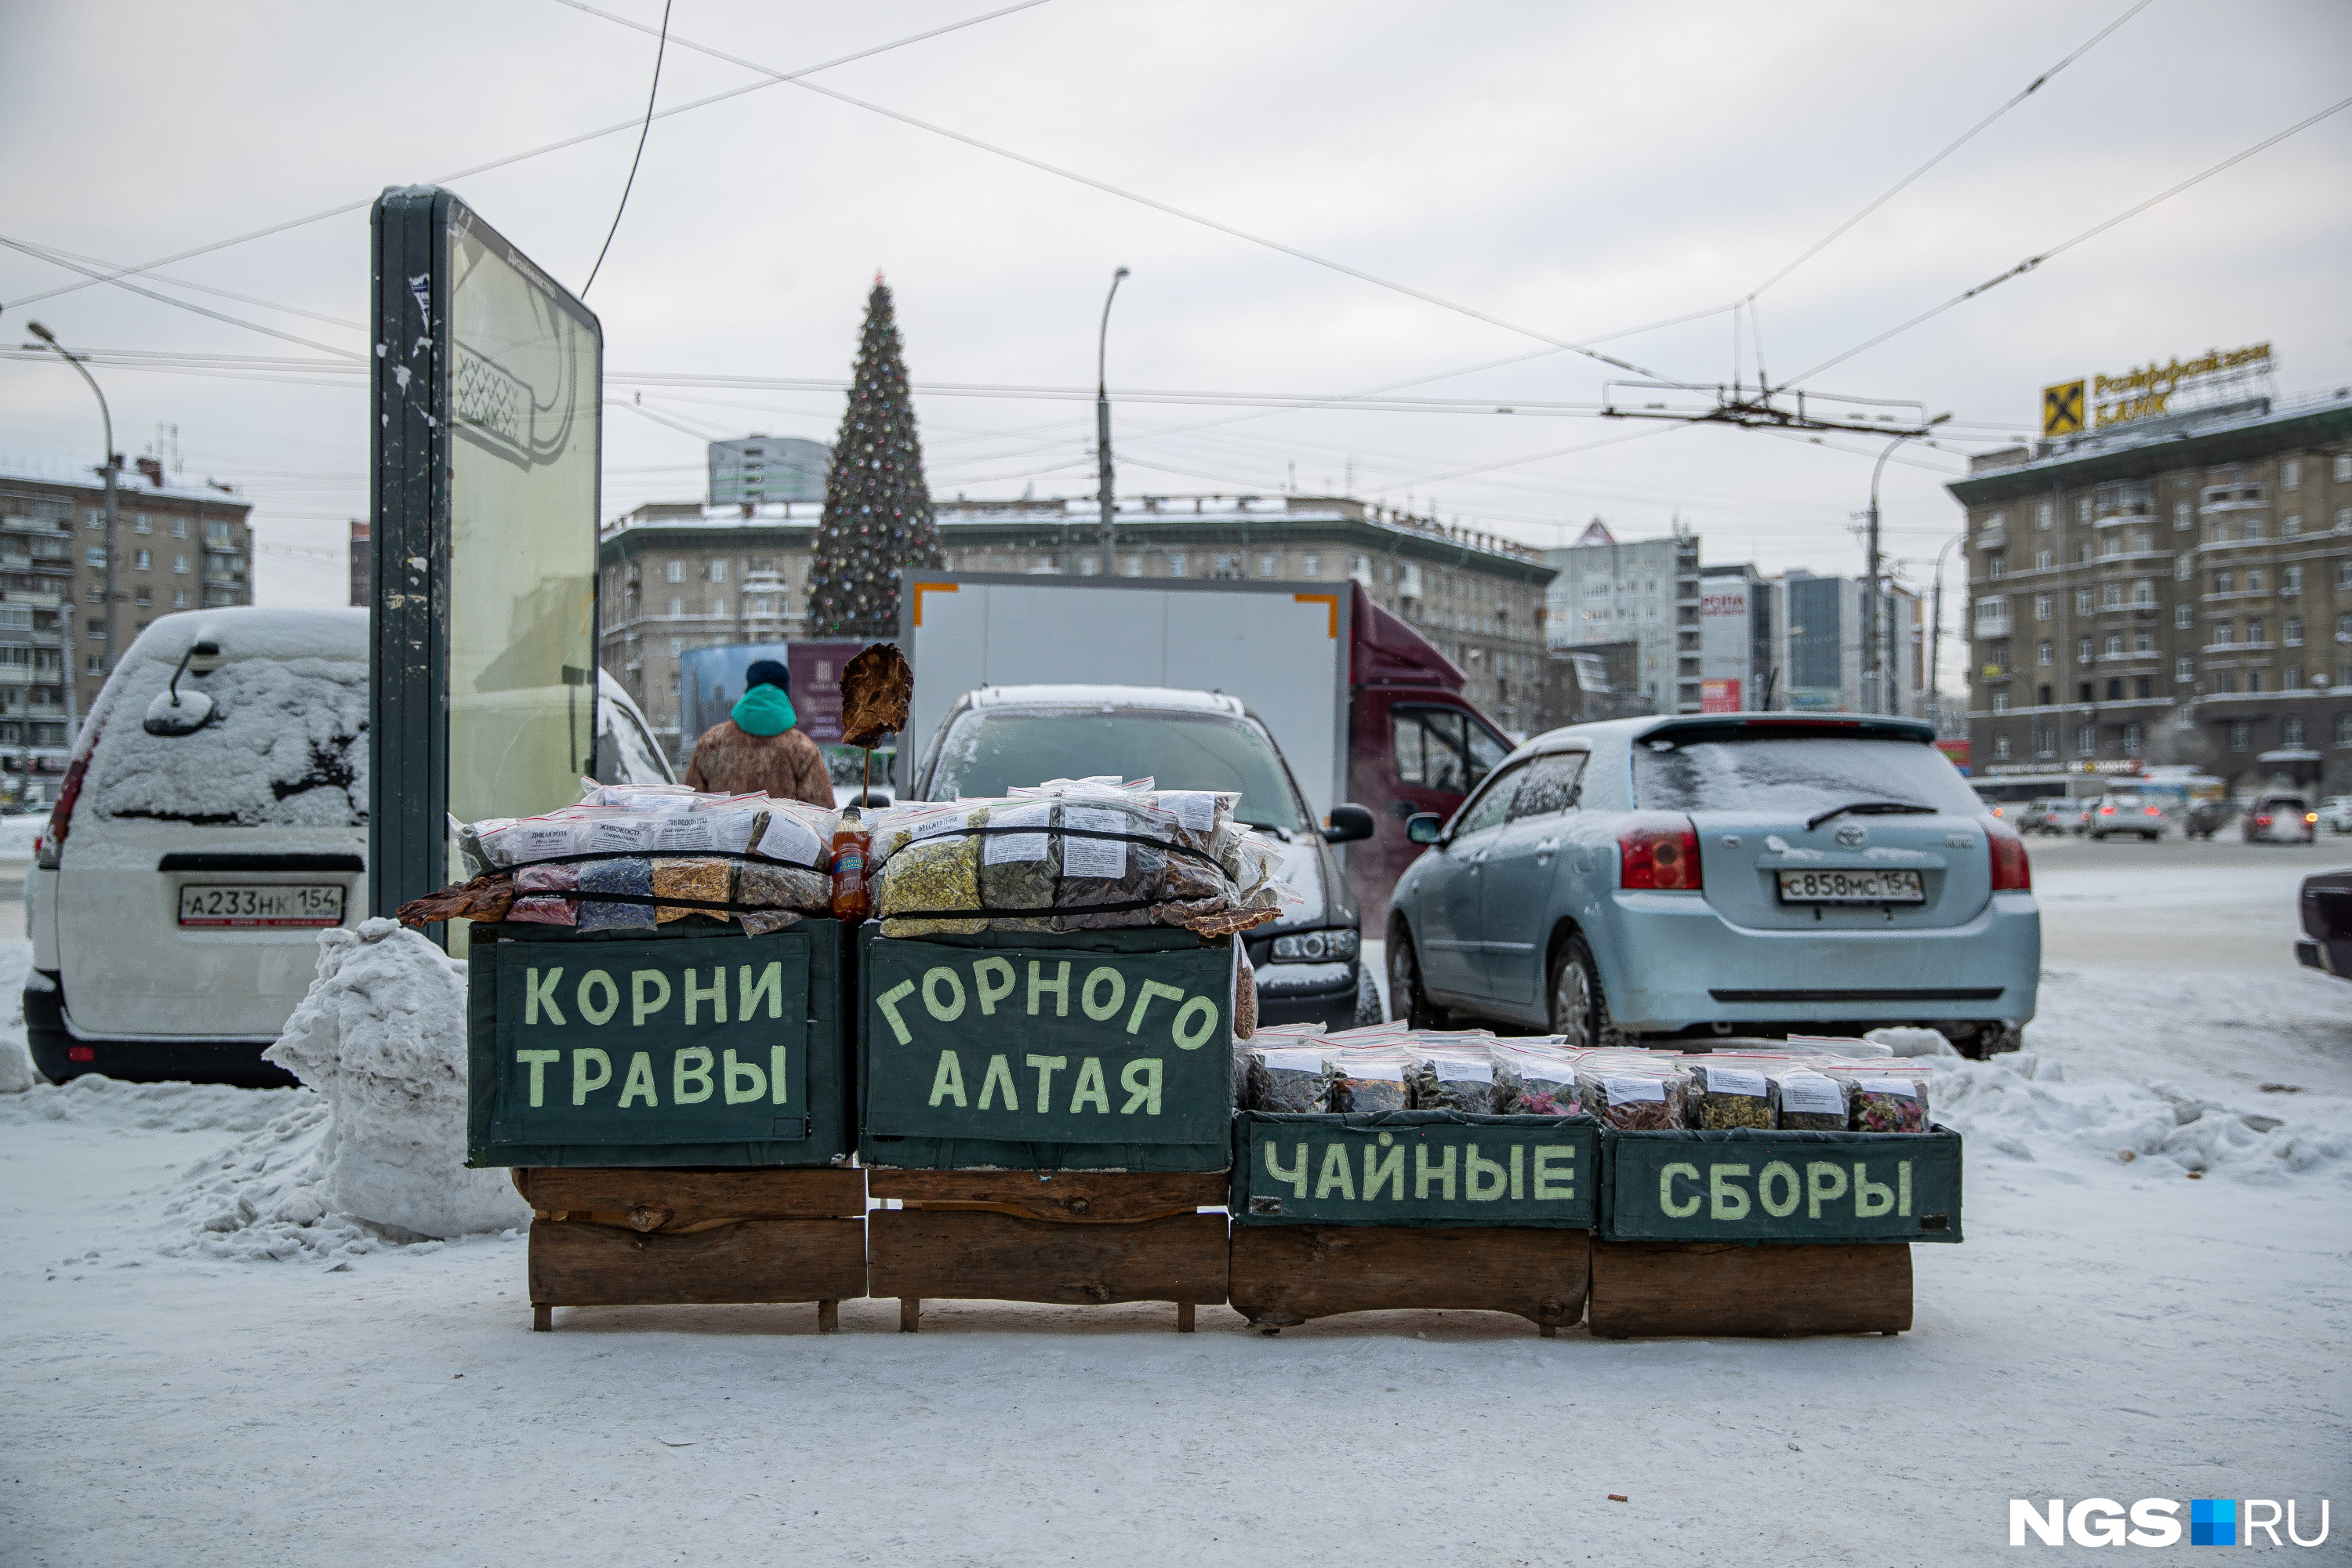 Ещё одна точка на площади Калинина — владелица этого лотка приезжает в Новосибирск с Алтая каждую зиму